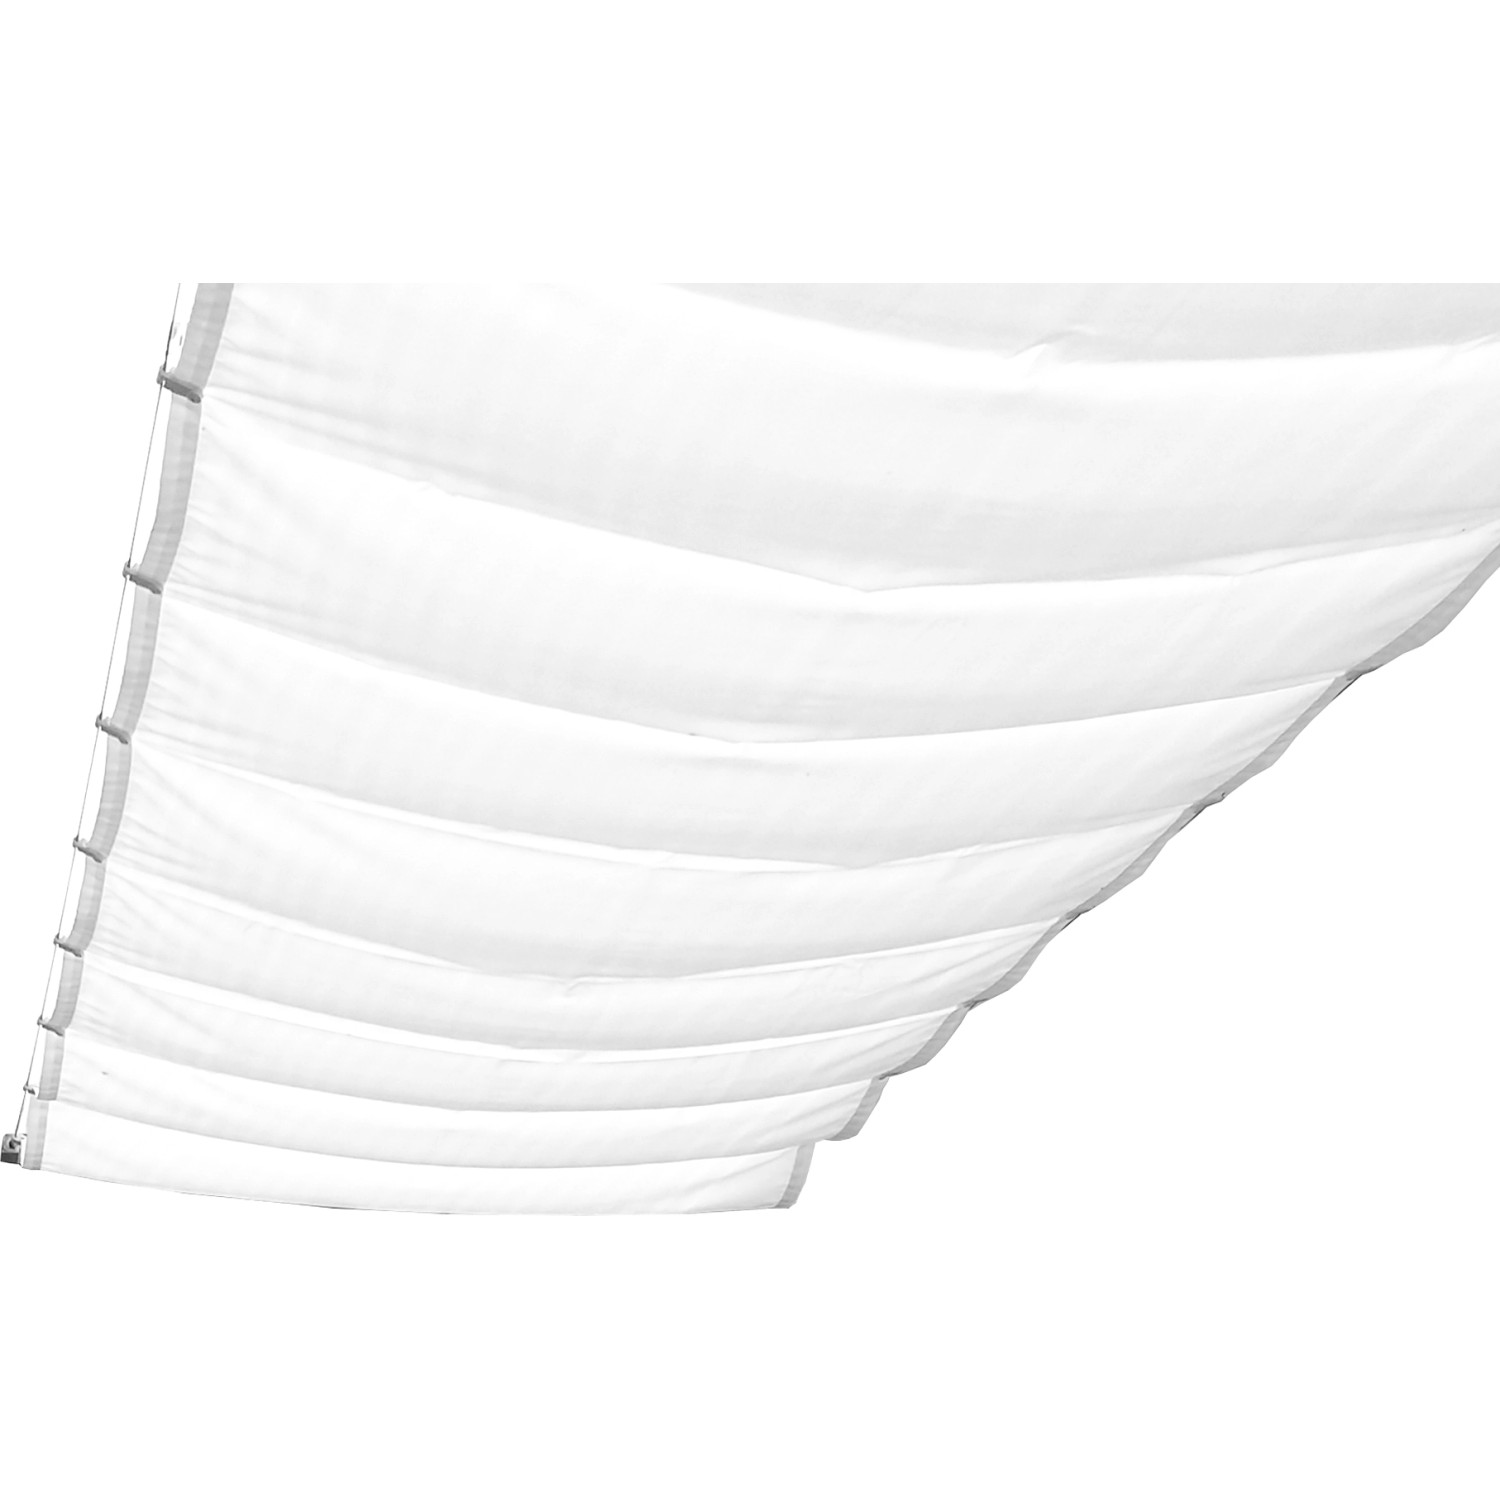 Peddy Shield Sonnensegel 330 cm x 58 cm Uni Weiß von Peddy Shield